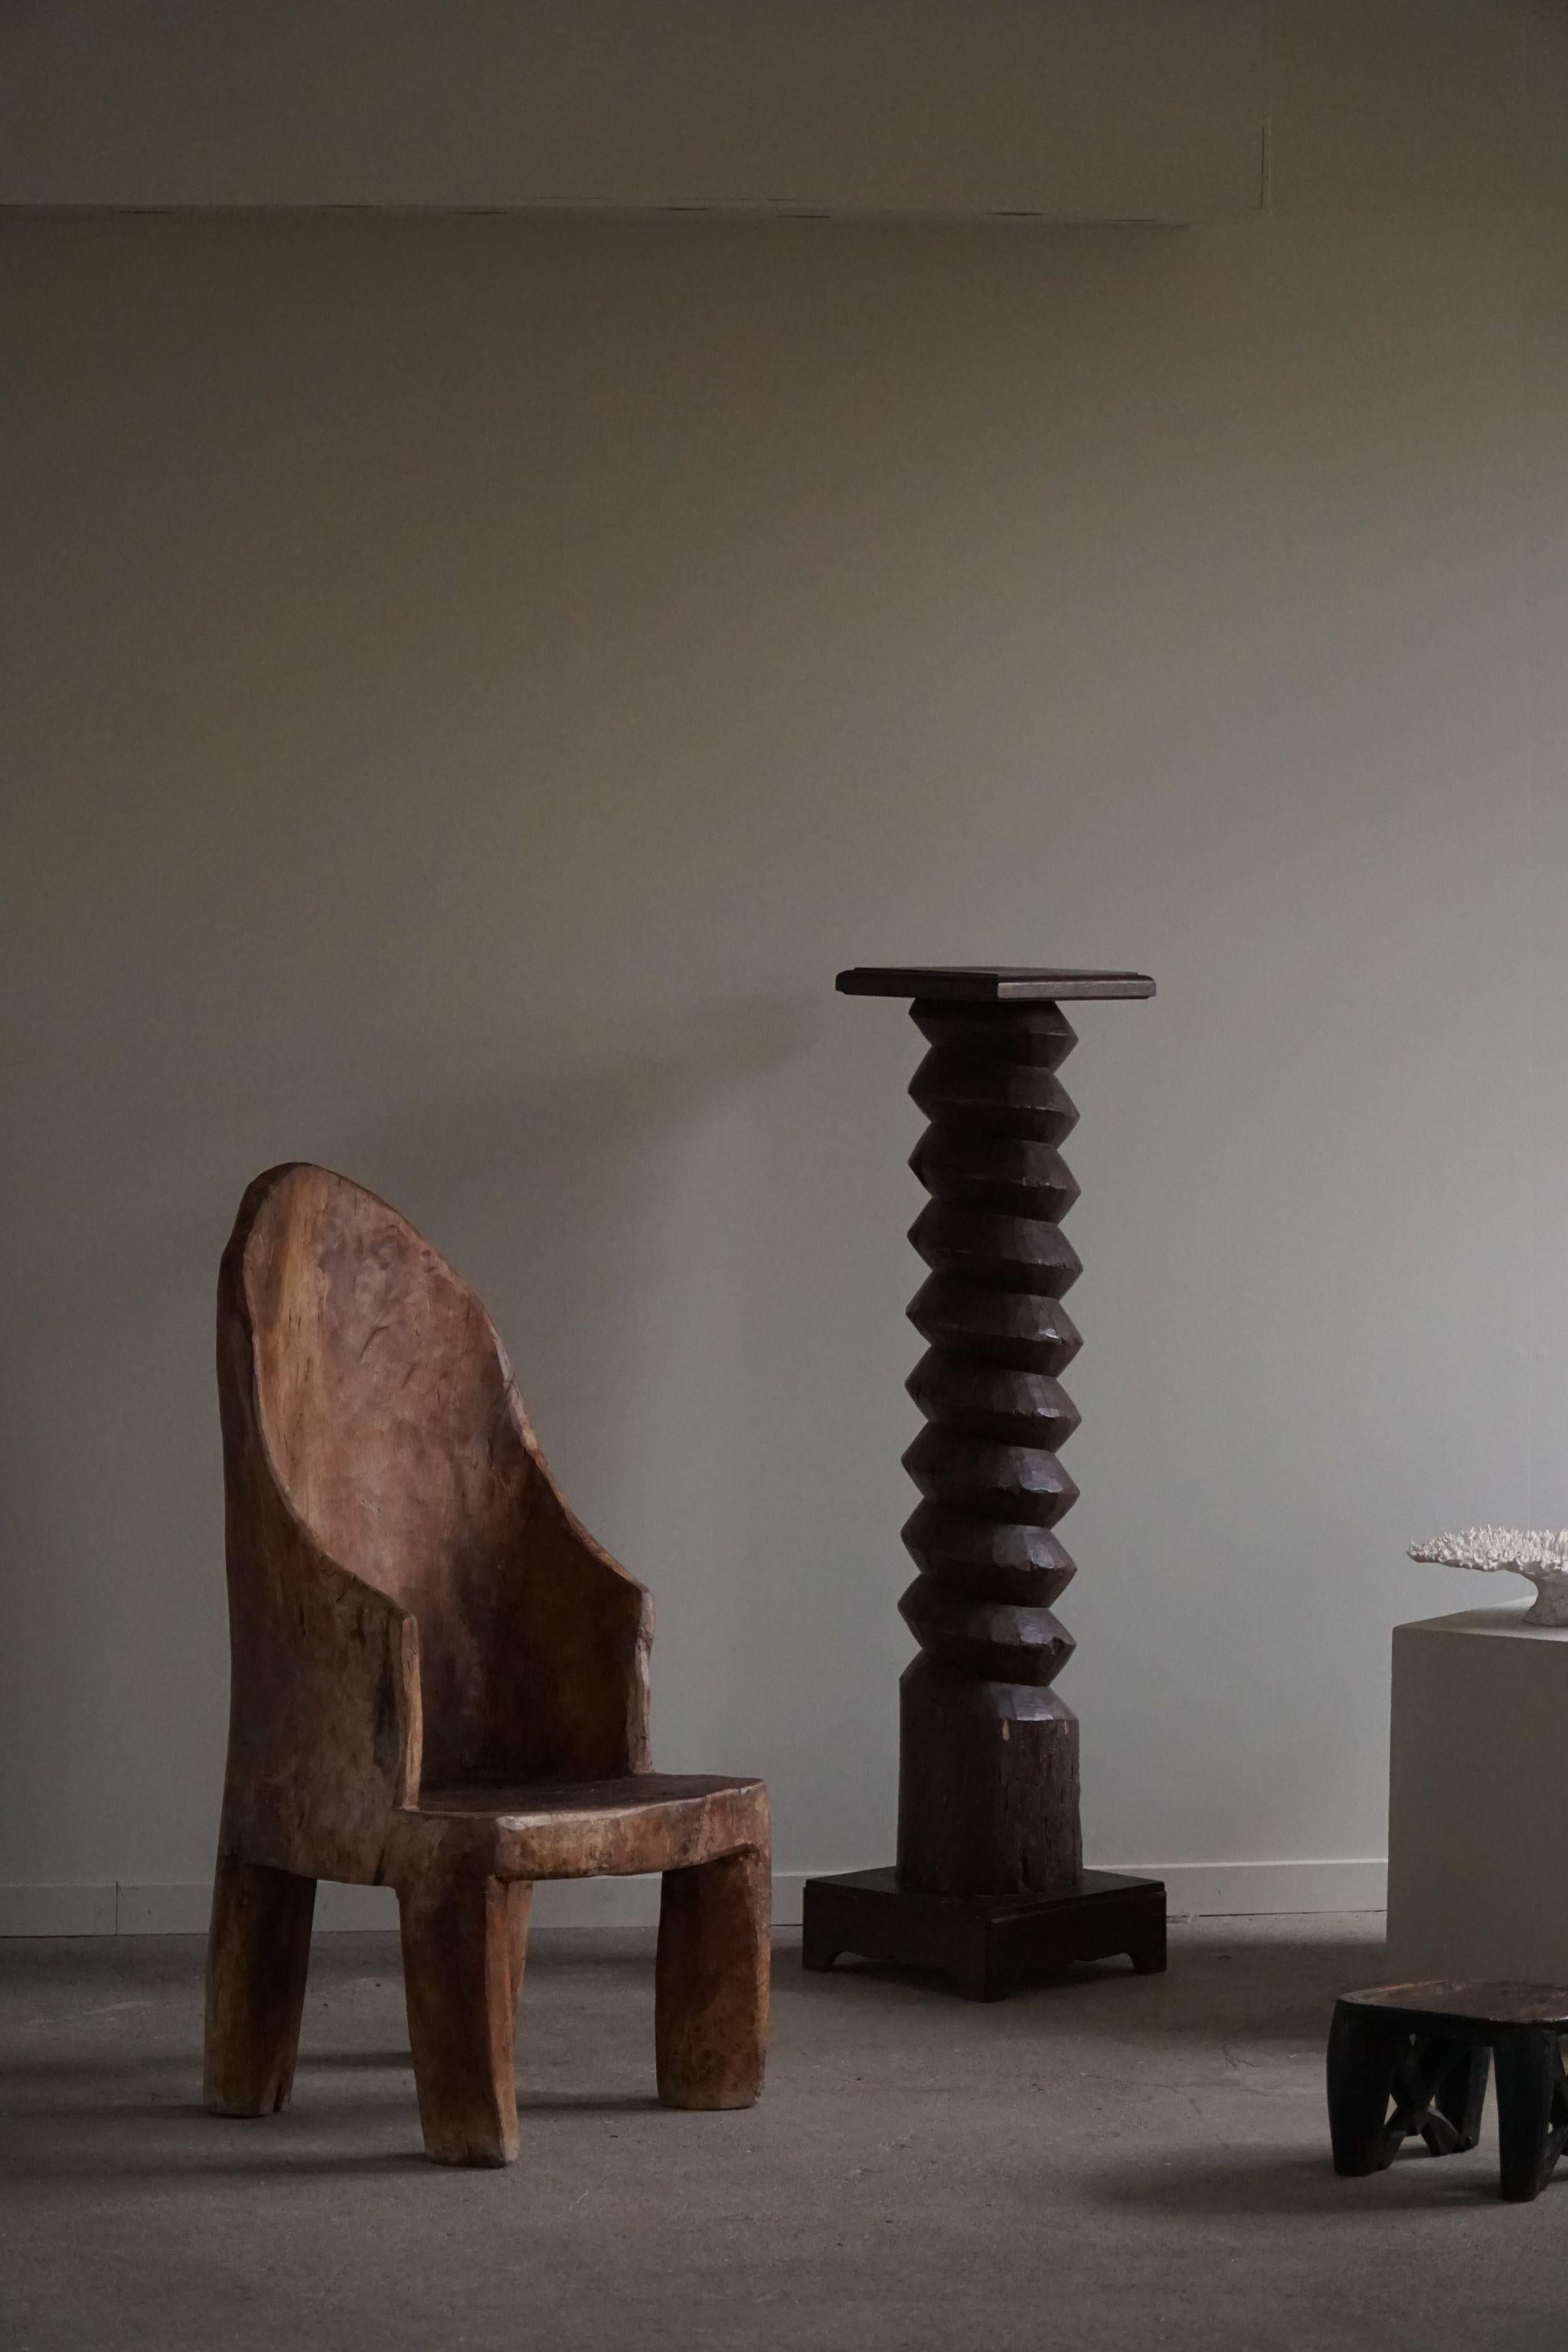 Einzigartige charmante authentische primitive Stumpf Stuhl in einem einzigen massiven Hartholz gemacht. Handgeschnitzt vom Stamm der Naga in Indien, ca. 1970er Jahre. 
Ein schönes Wabi-Sabi-Stück in gutem Vintage-Zustand mit einigen Alters- und